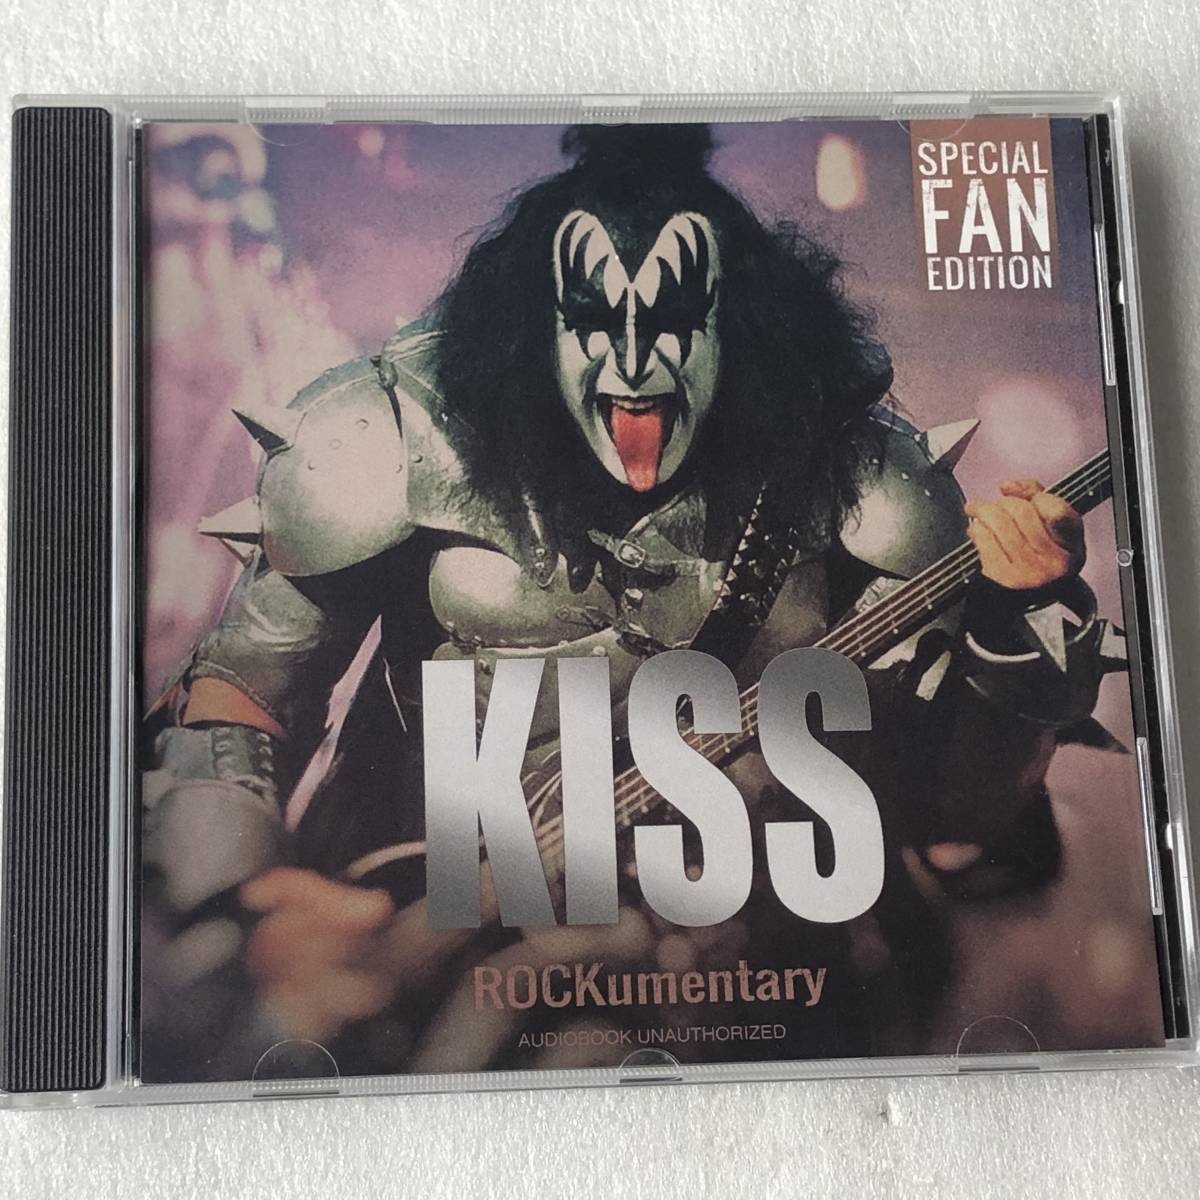 中古CD KISS キッス/Rockumentary コンピ盤(2018年 LM1617) 米国産HR/HM,スタジアムロック系_画像1